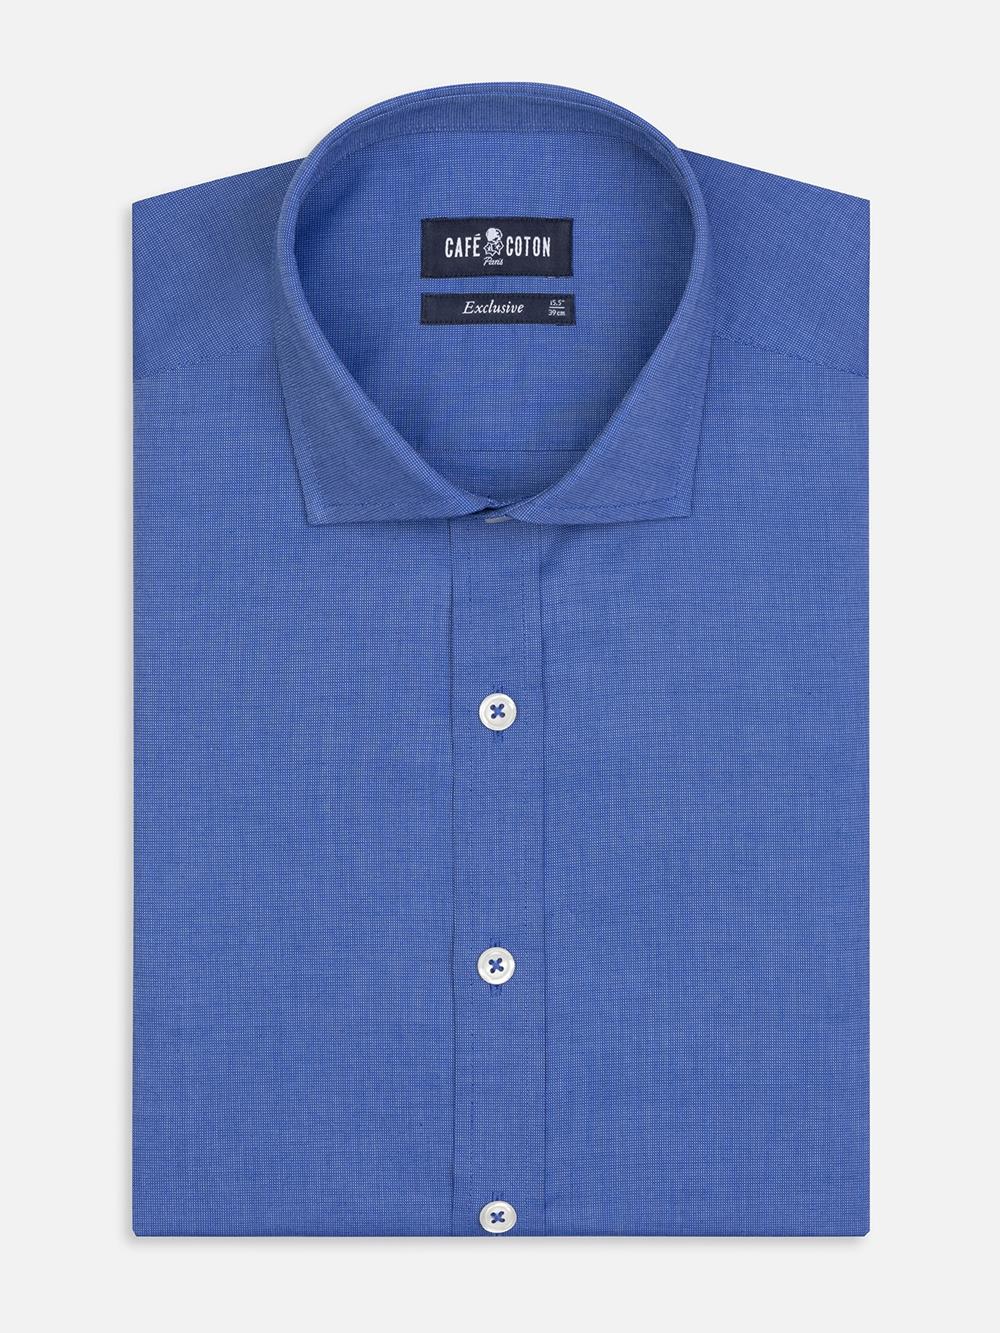 Bob overhemd in blauw micro-oxford